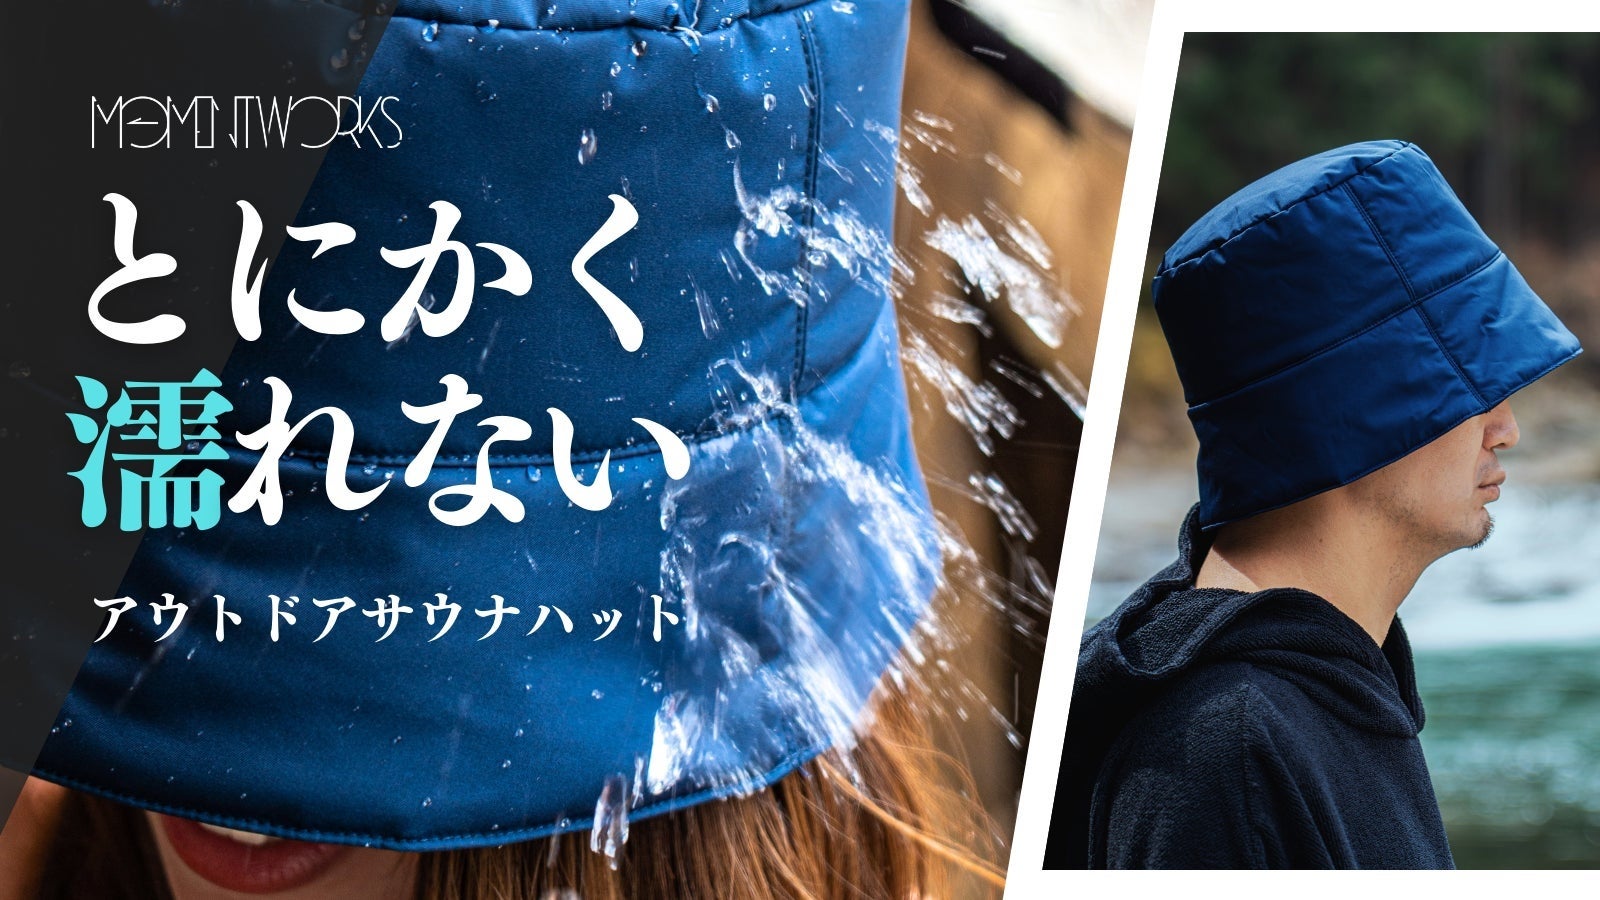 【公開初日で100万円突破】Moment Worksの「とにかく濡れないアウトドアサウナハット」がMakuakeにて販売開始のサブ画像3